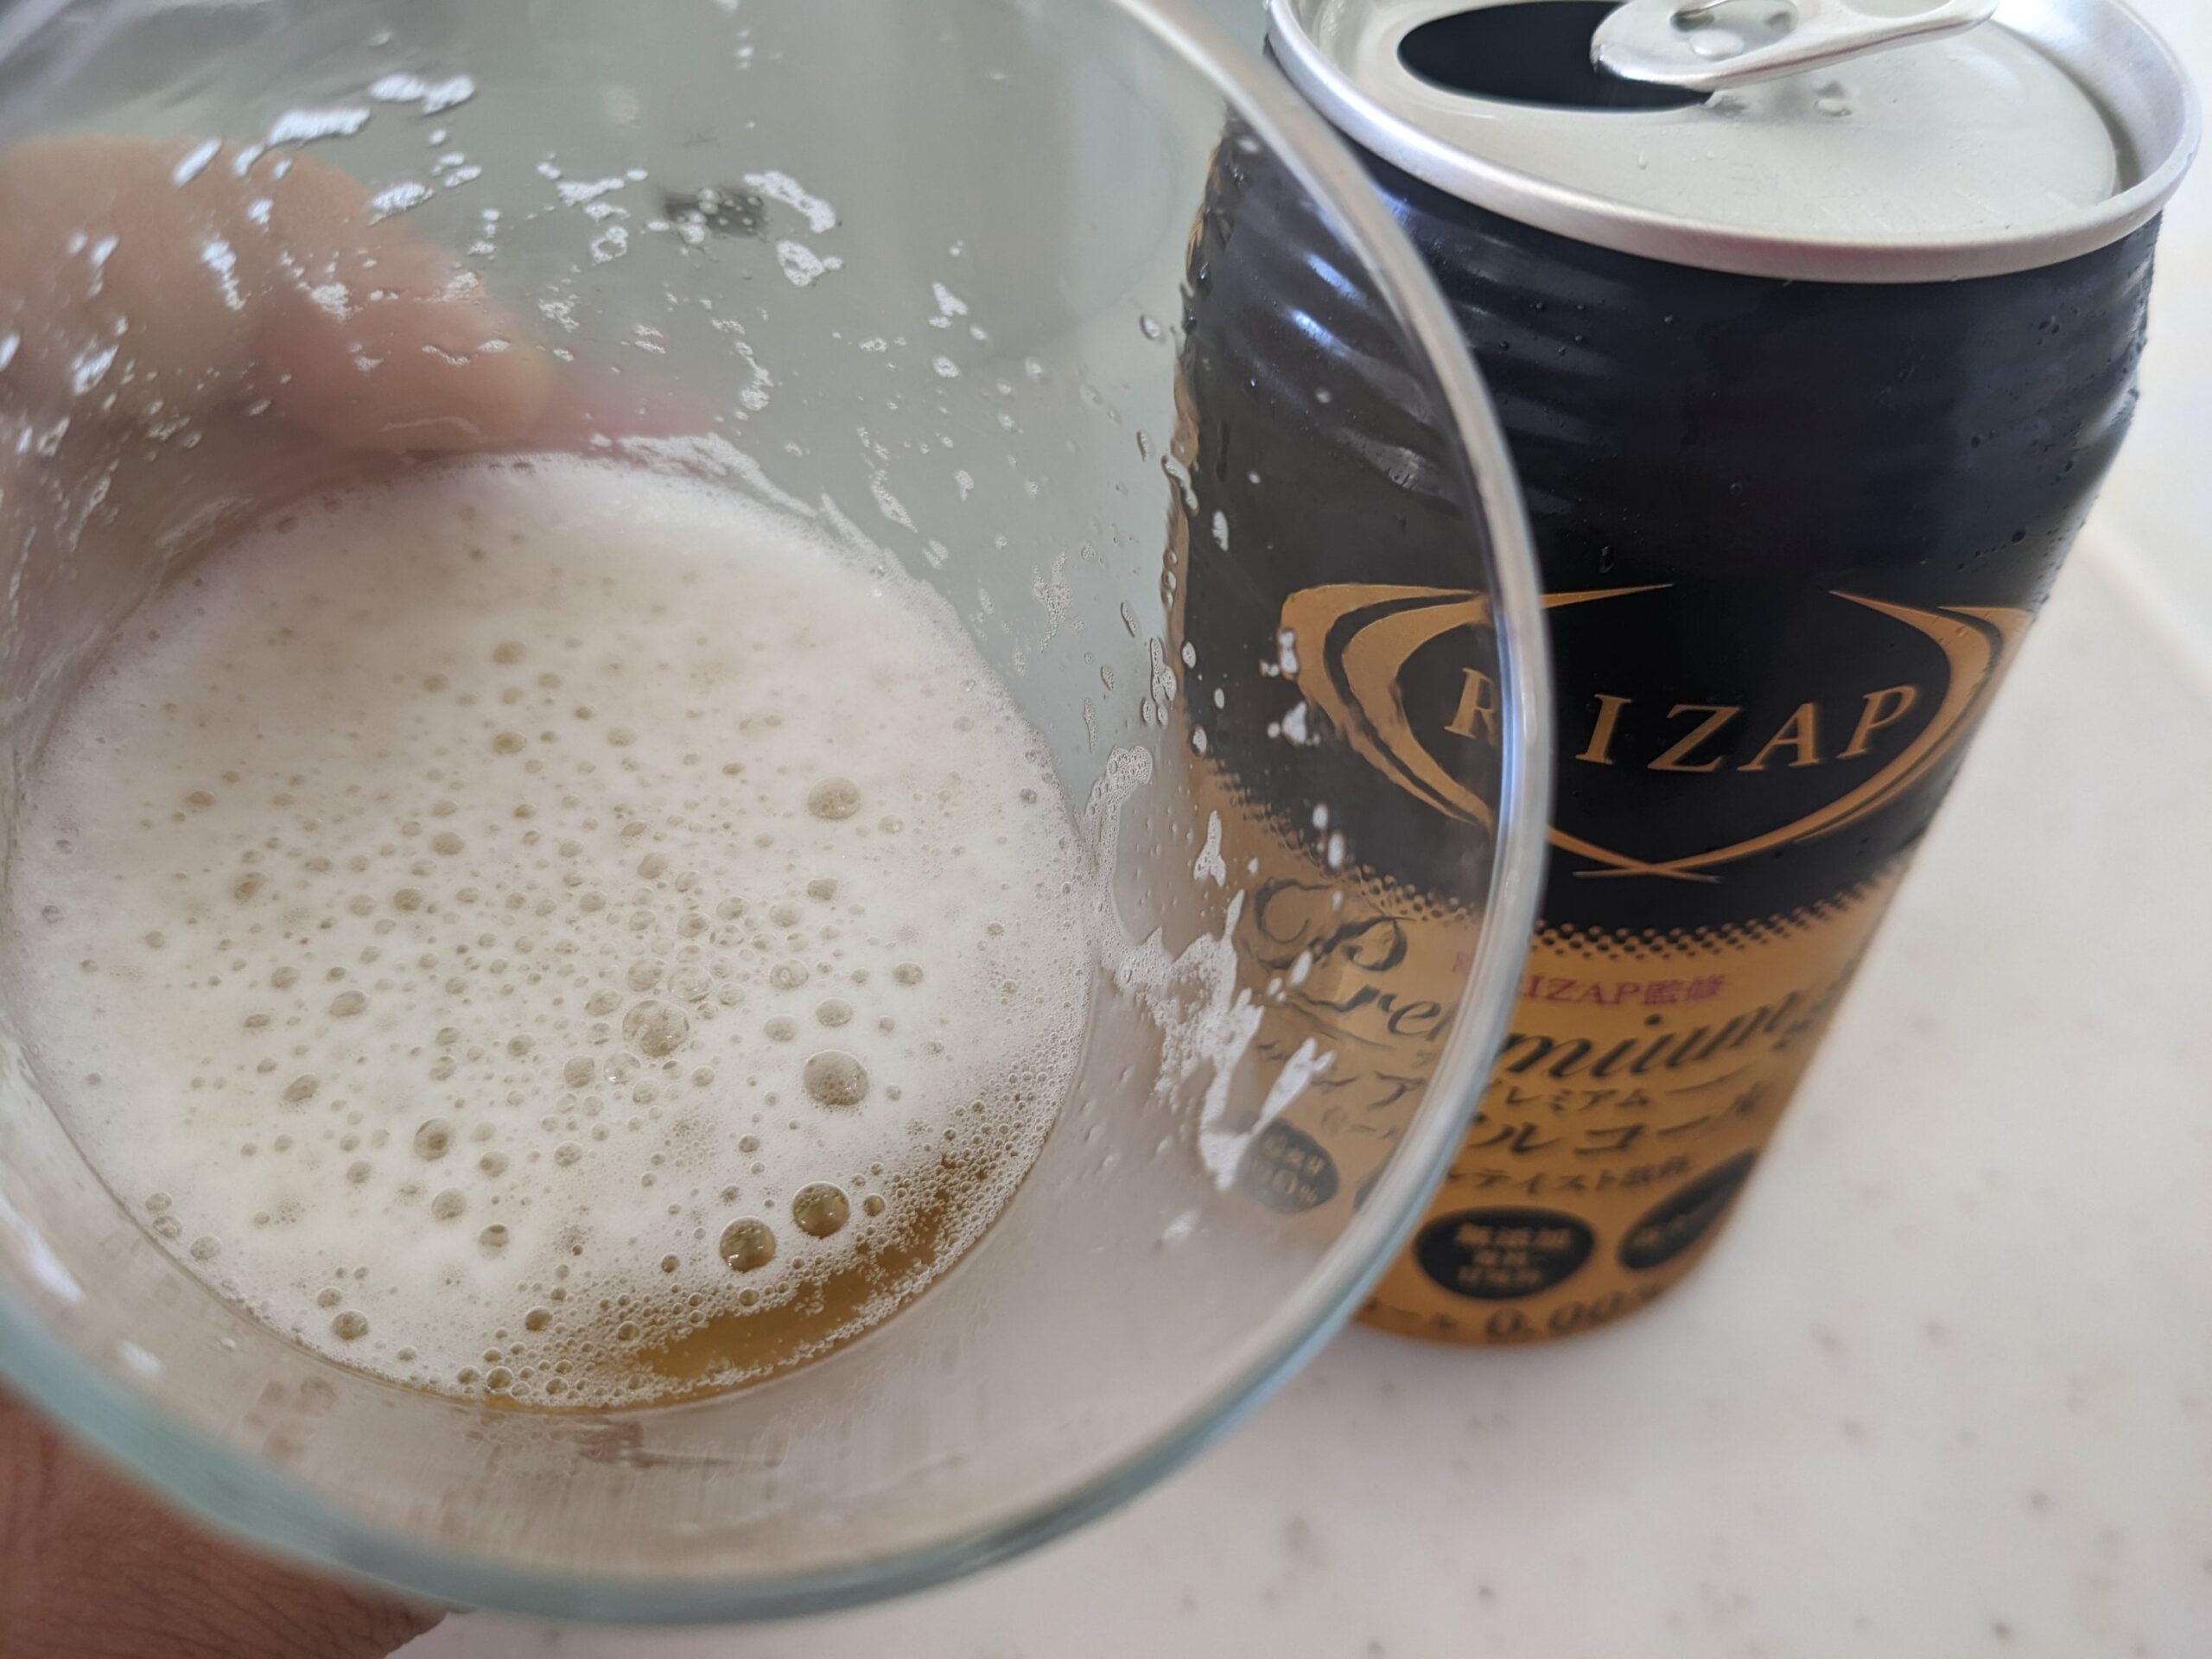 「RIZAP（ライザップ）プレミアムノンアルコールビールテイスト飲料」が入ったグラスを手前に傾けているところ